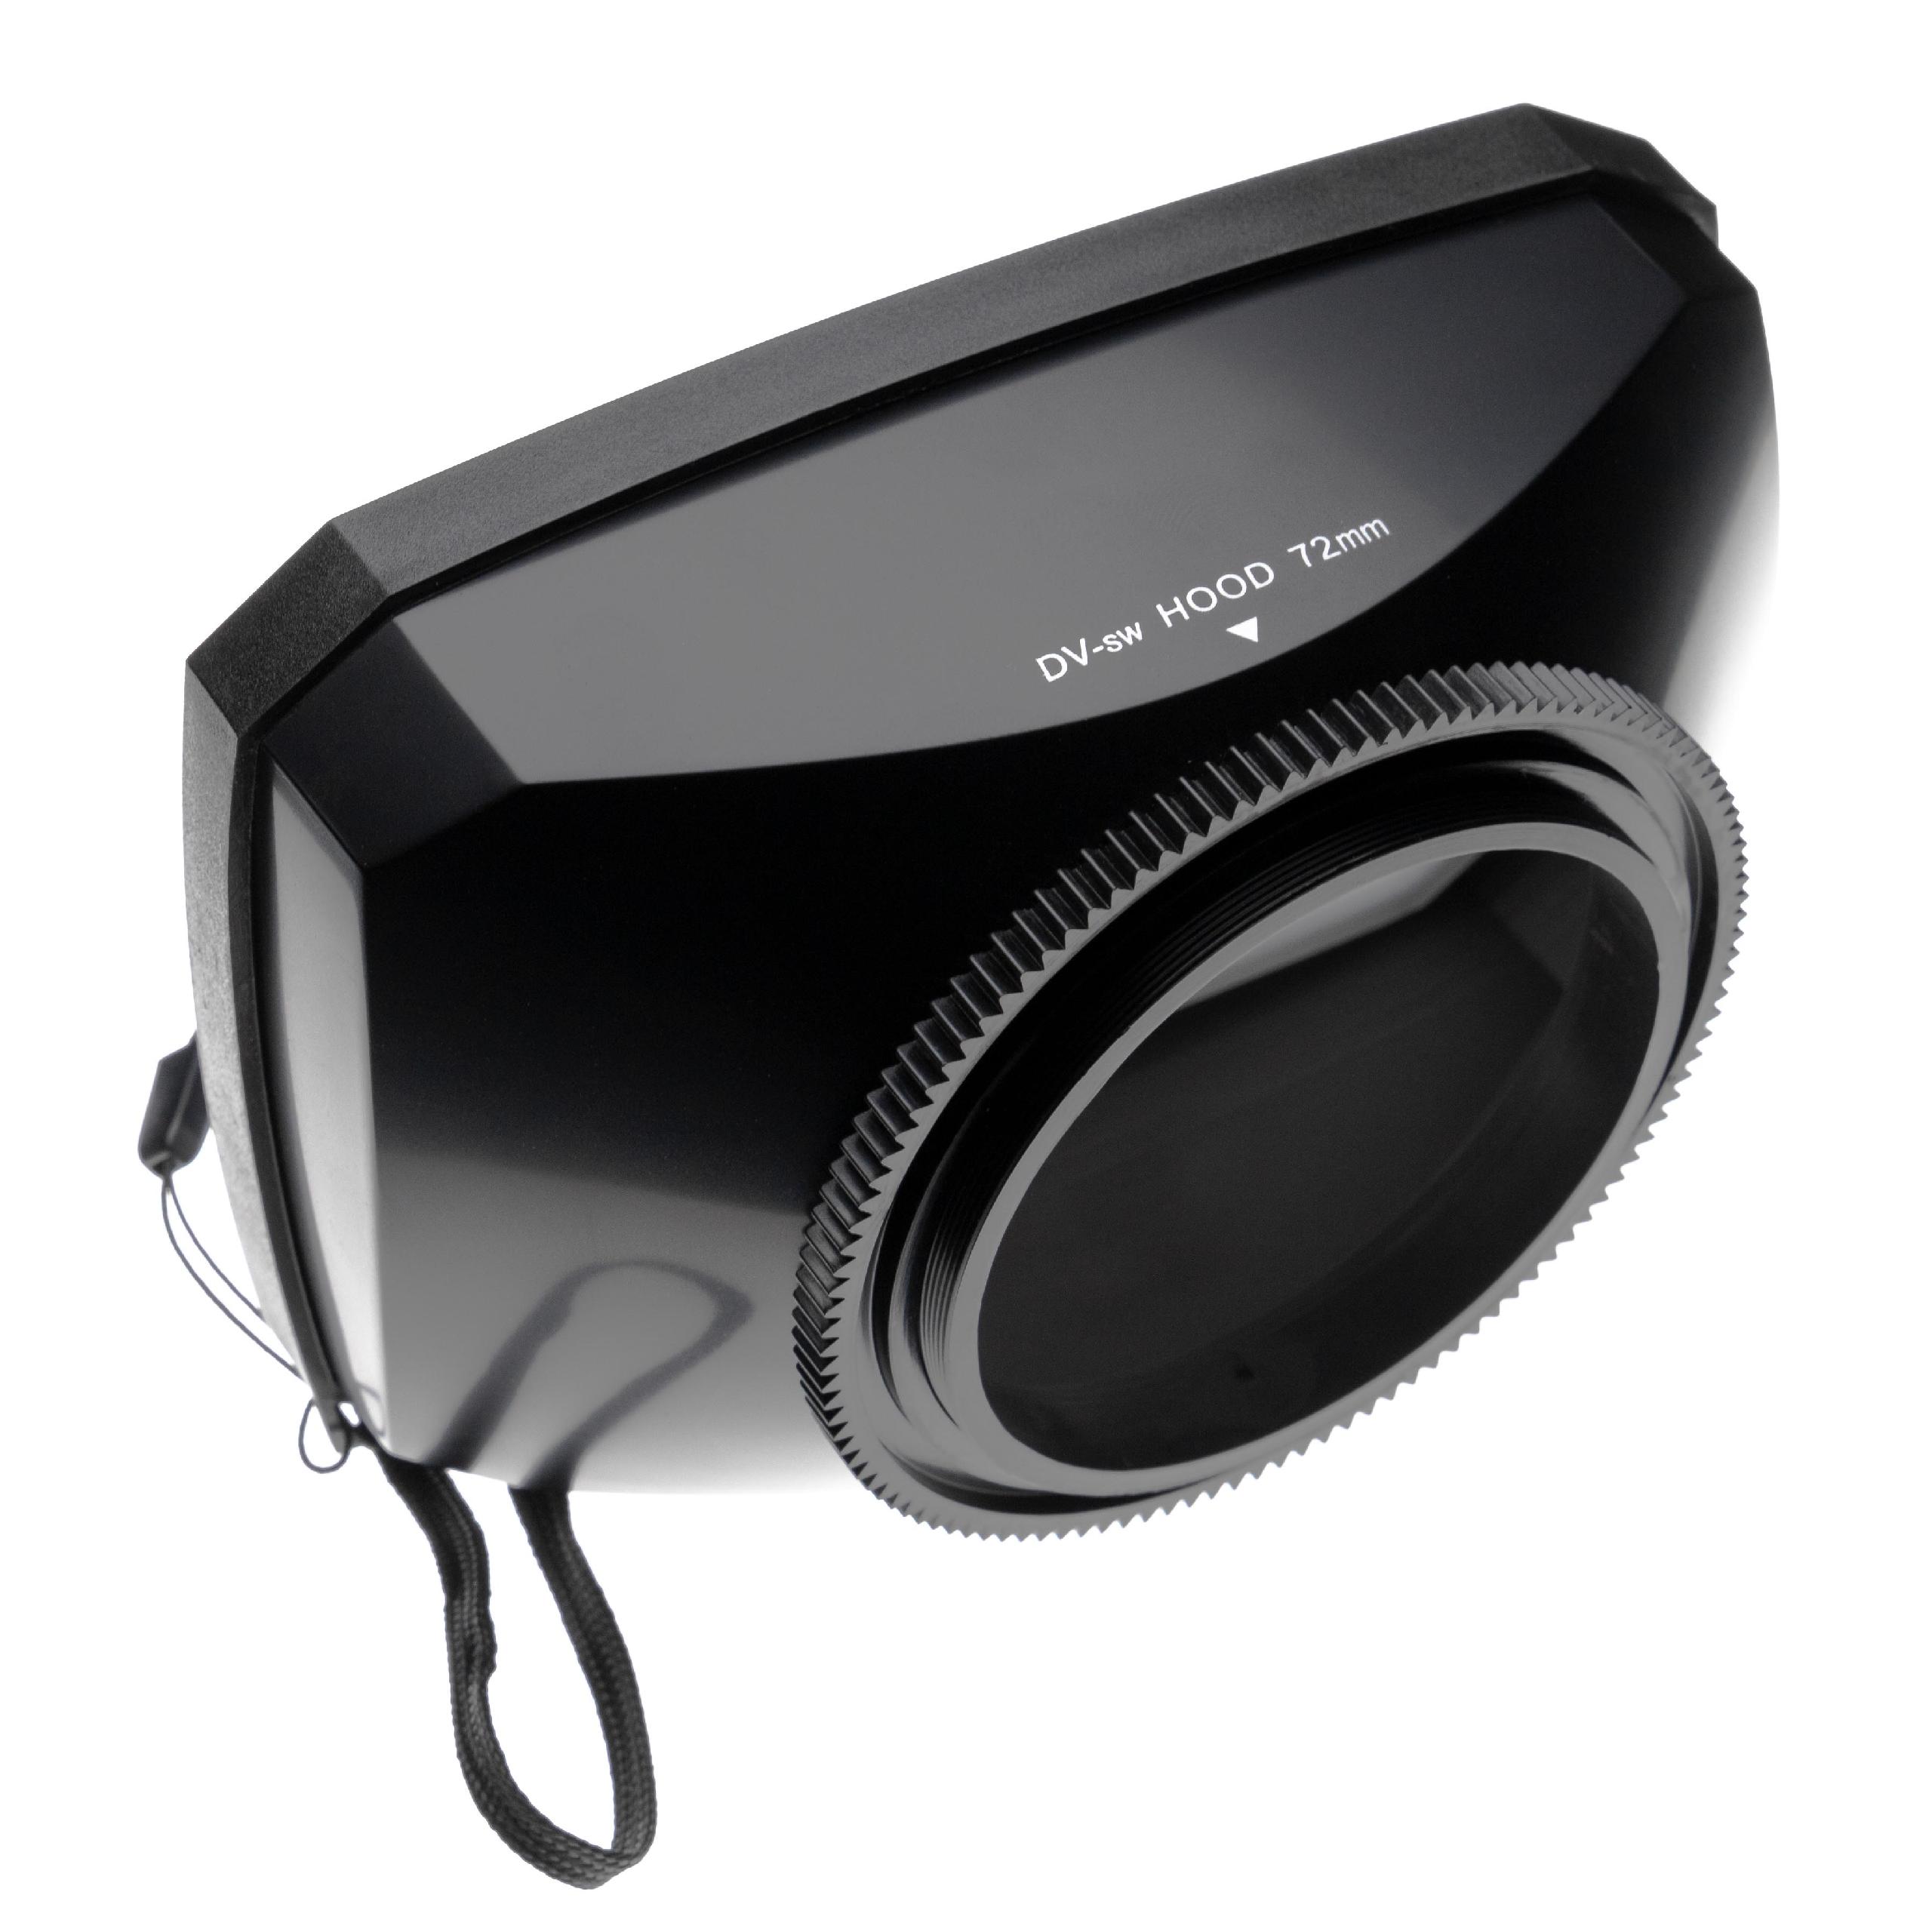 Capucha lente con tapa balance de blancos para cámaras con 72 mm de rosca - formato 16:9 